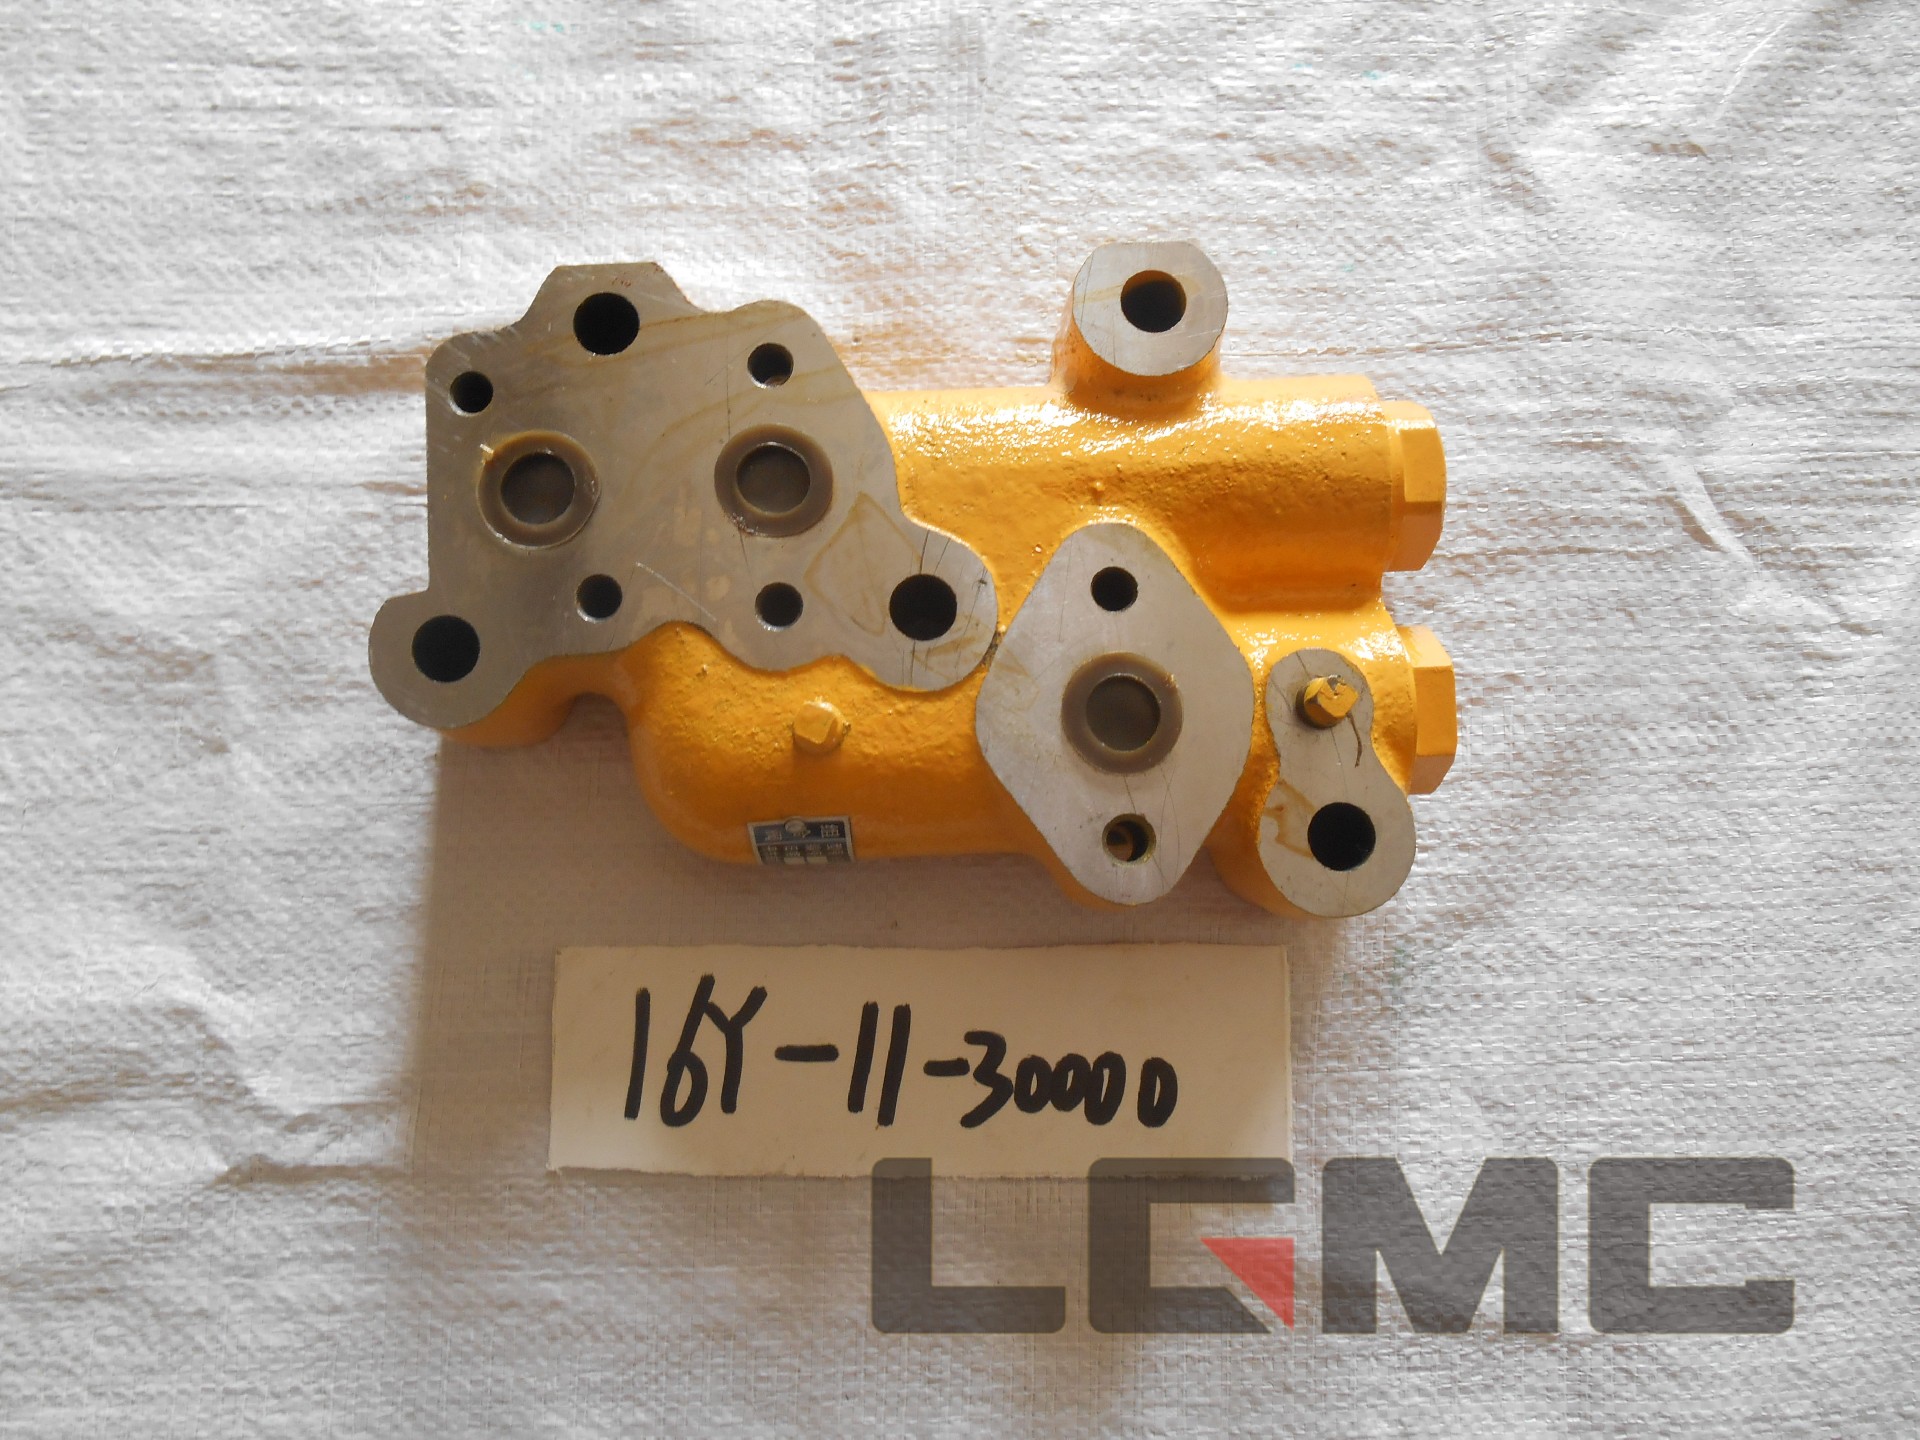 16Y-11-30000 Combination valve